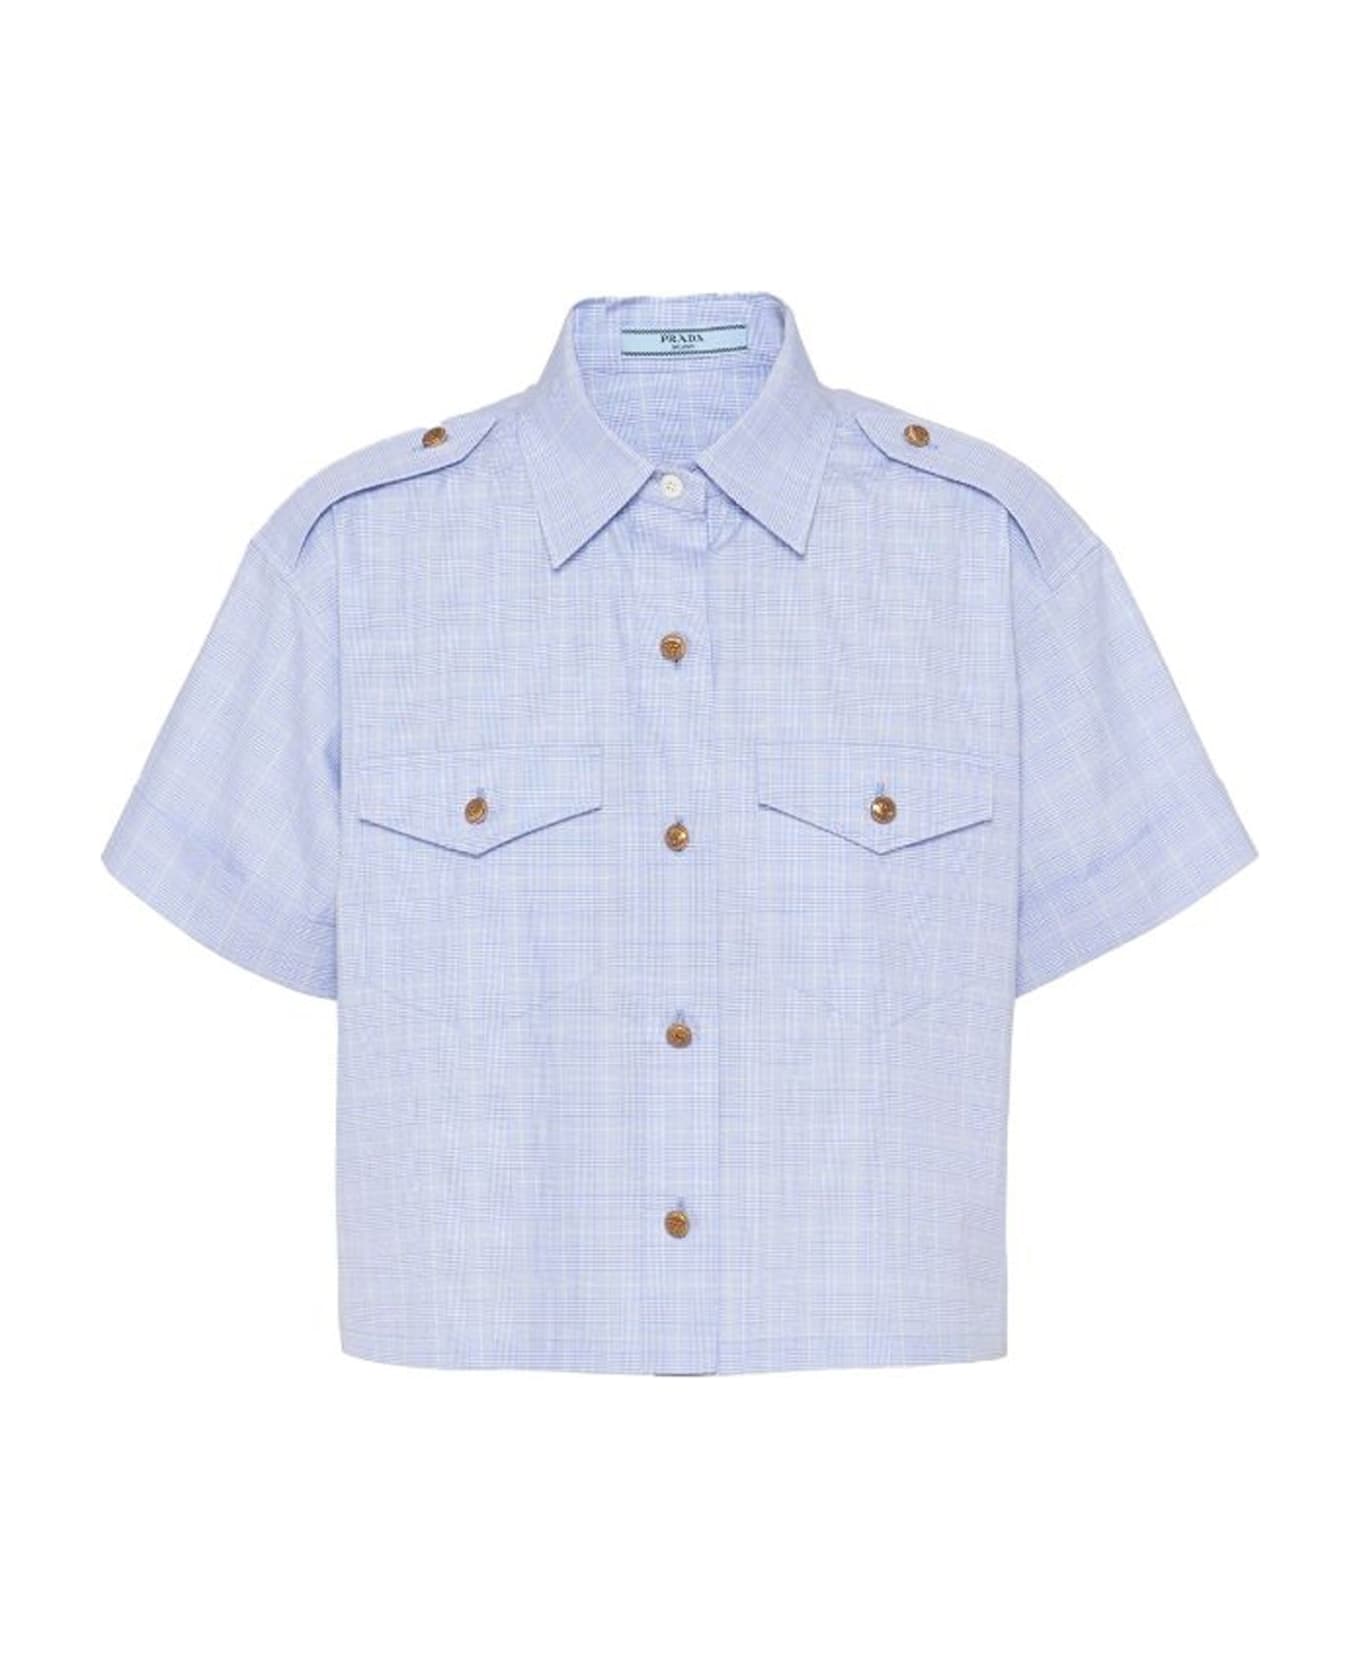 Prada Short Sleeves Shirt - Blue